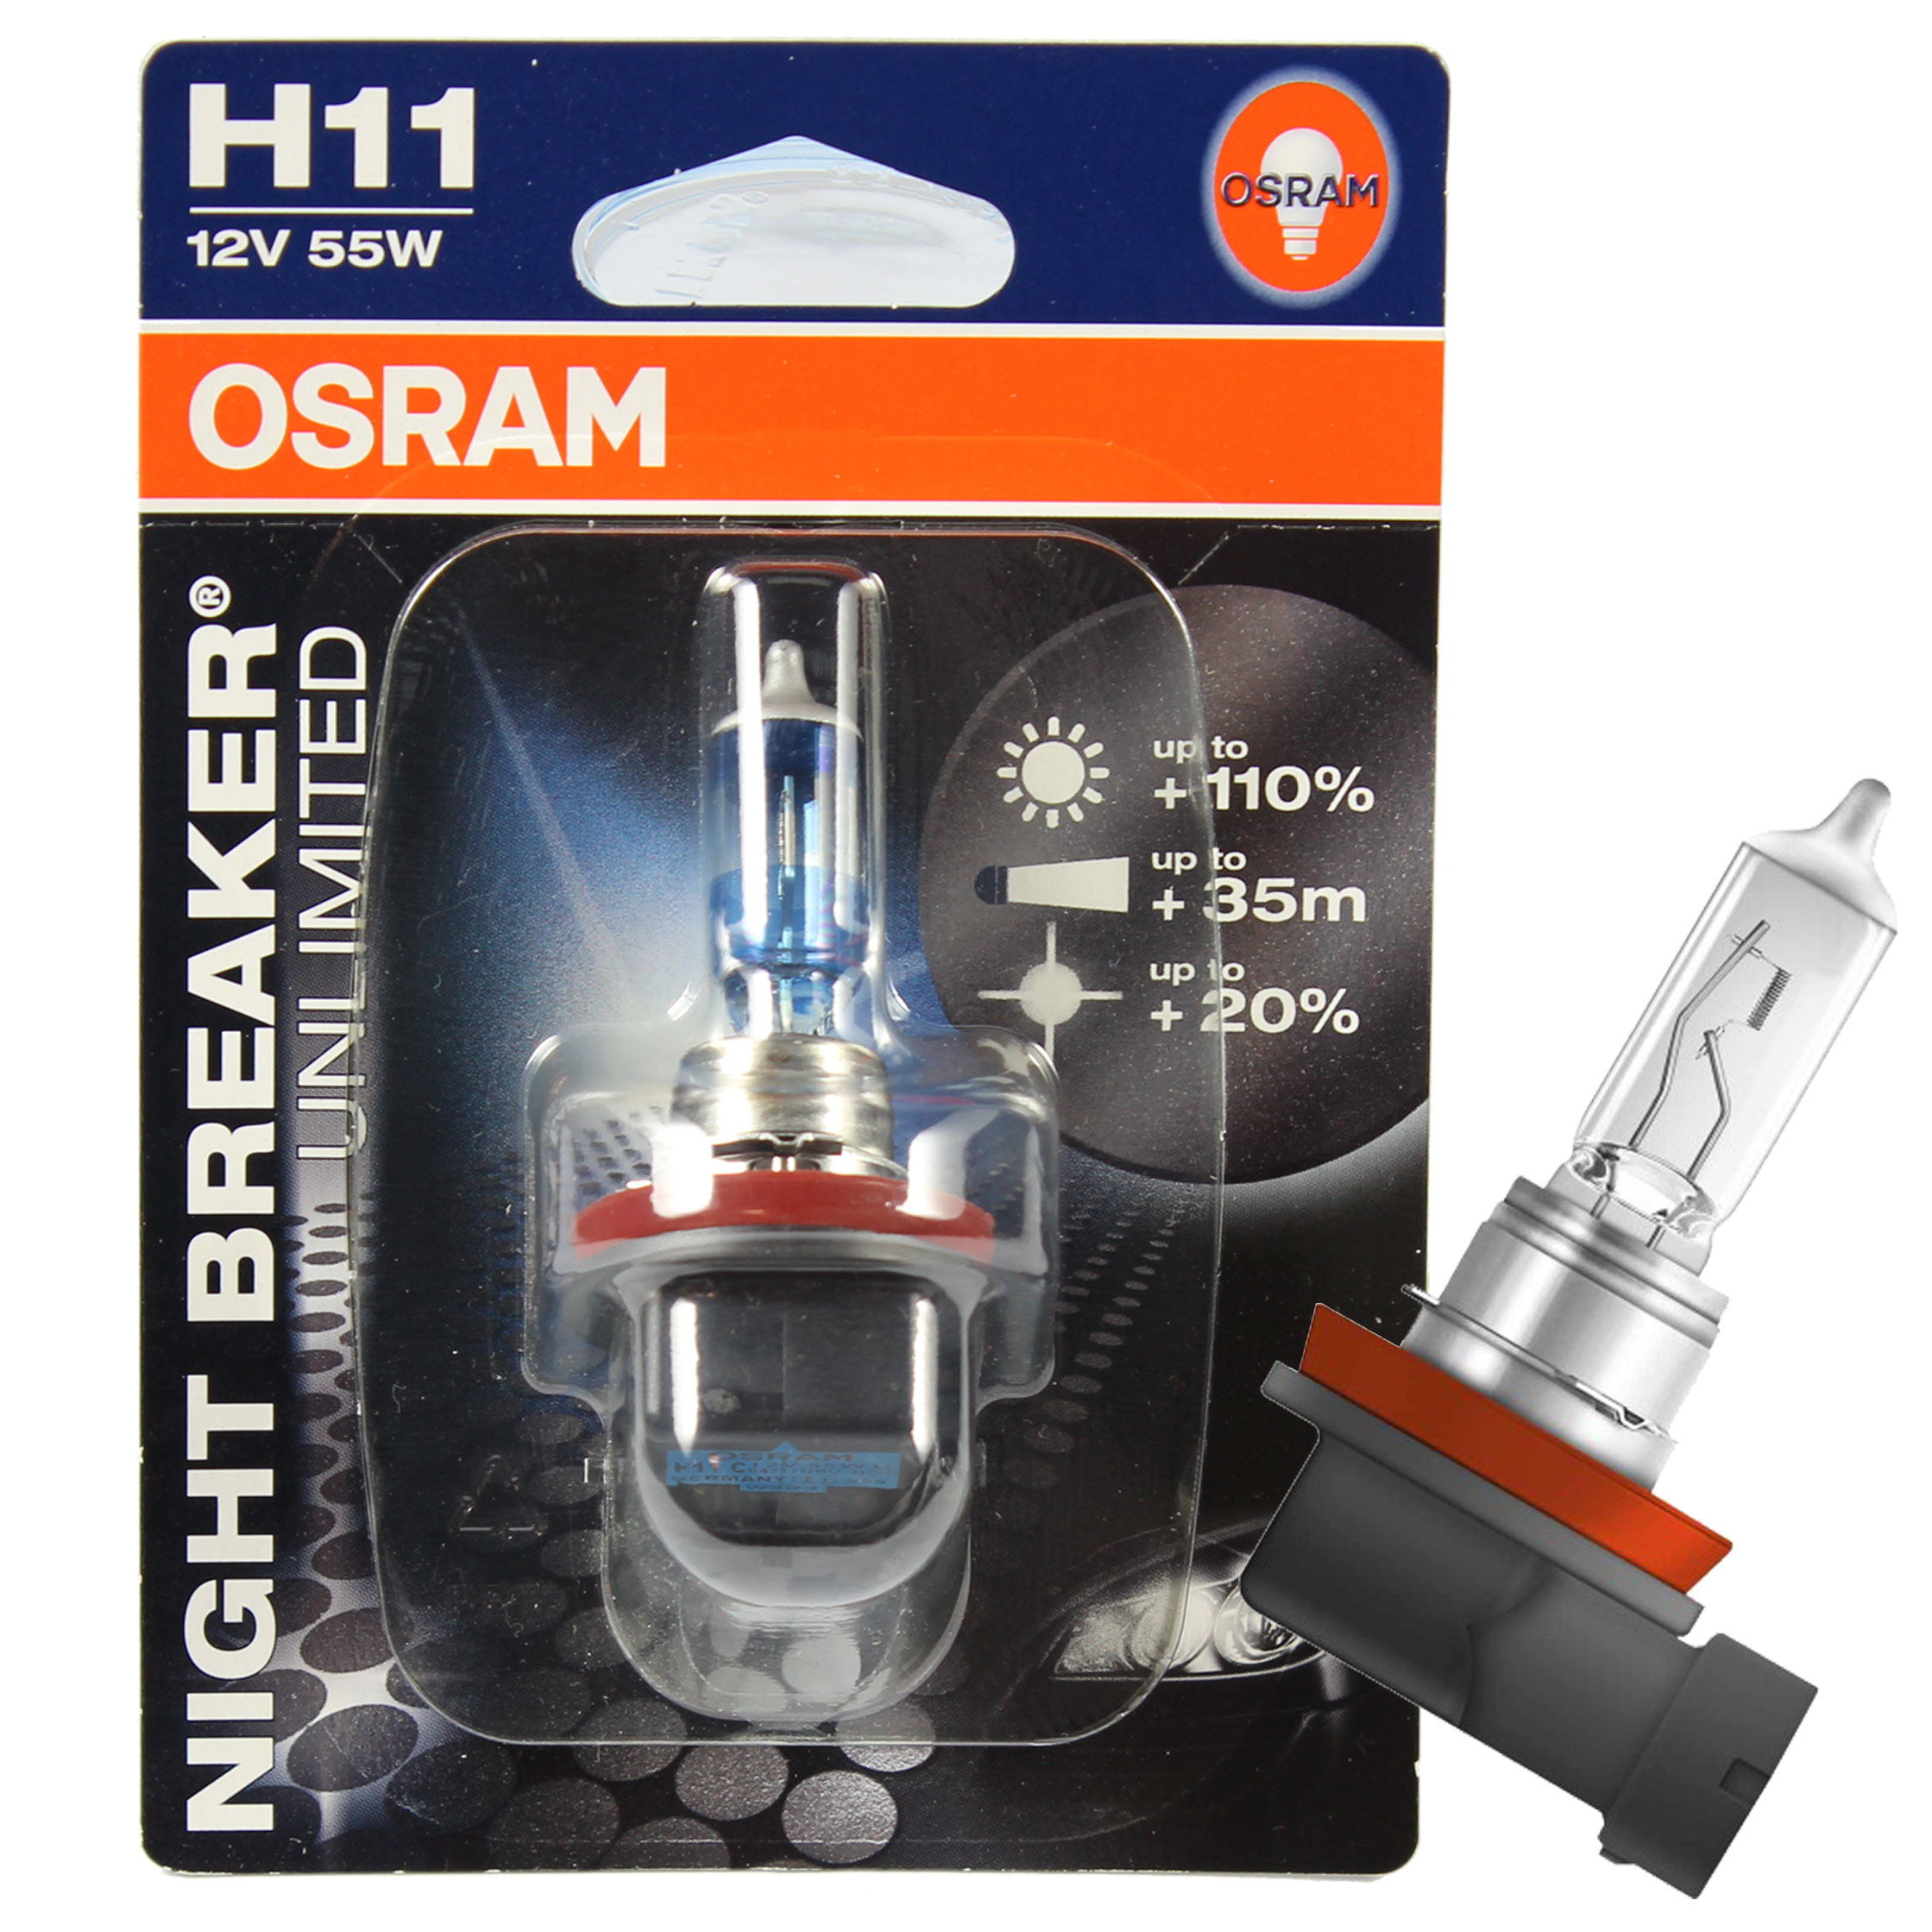 OSRAM Night Breaker UNLIMITED H11 12V 55W Sockel PGj19-2